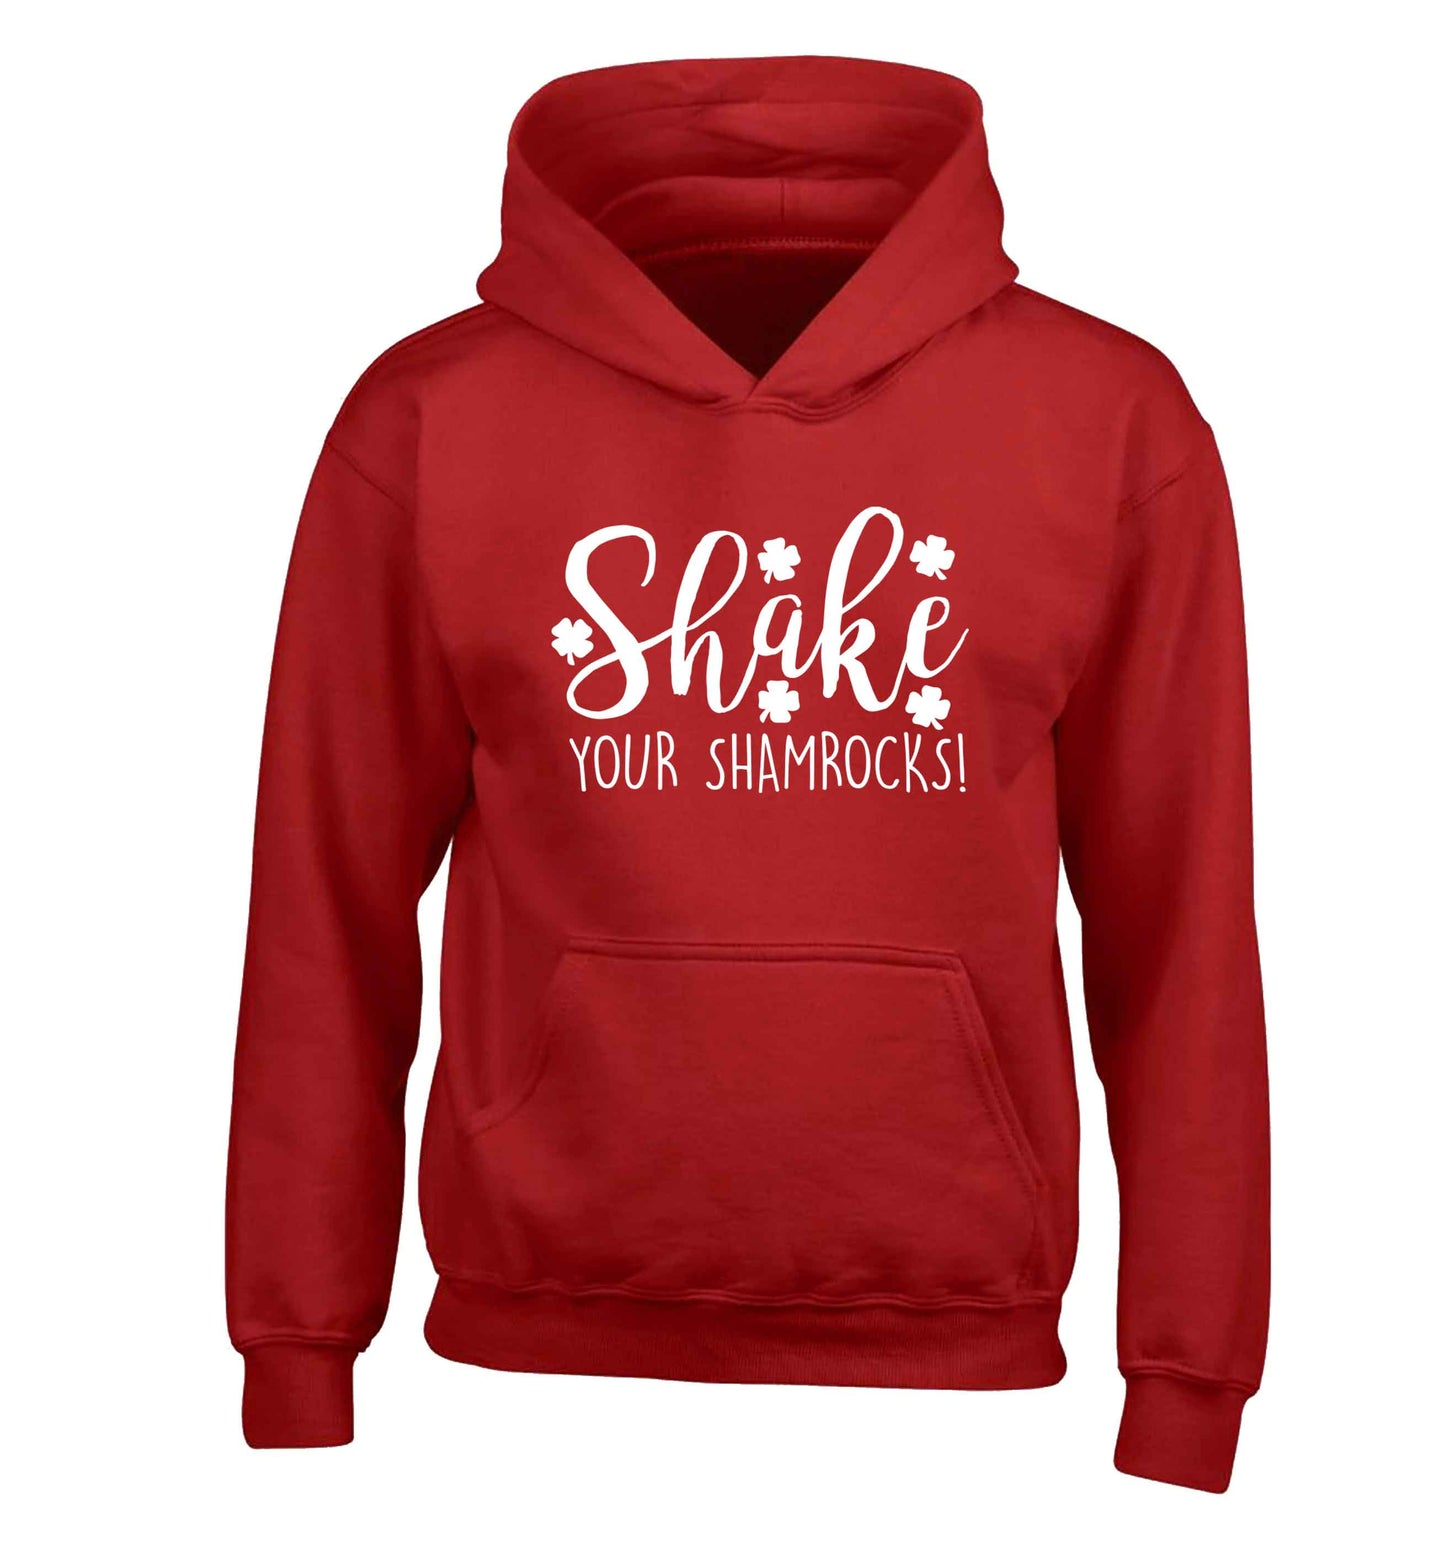 Shake your shamrocks children's red hoodie 12-13 Years